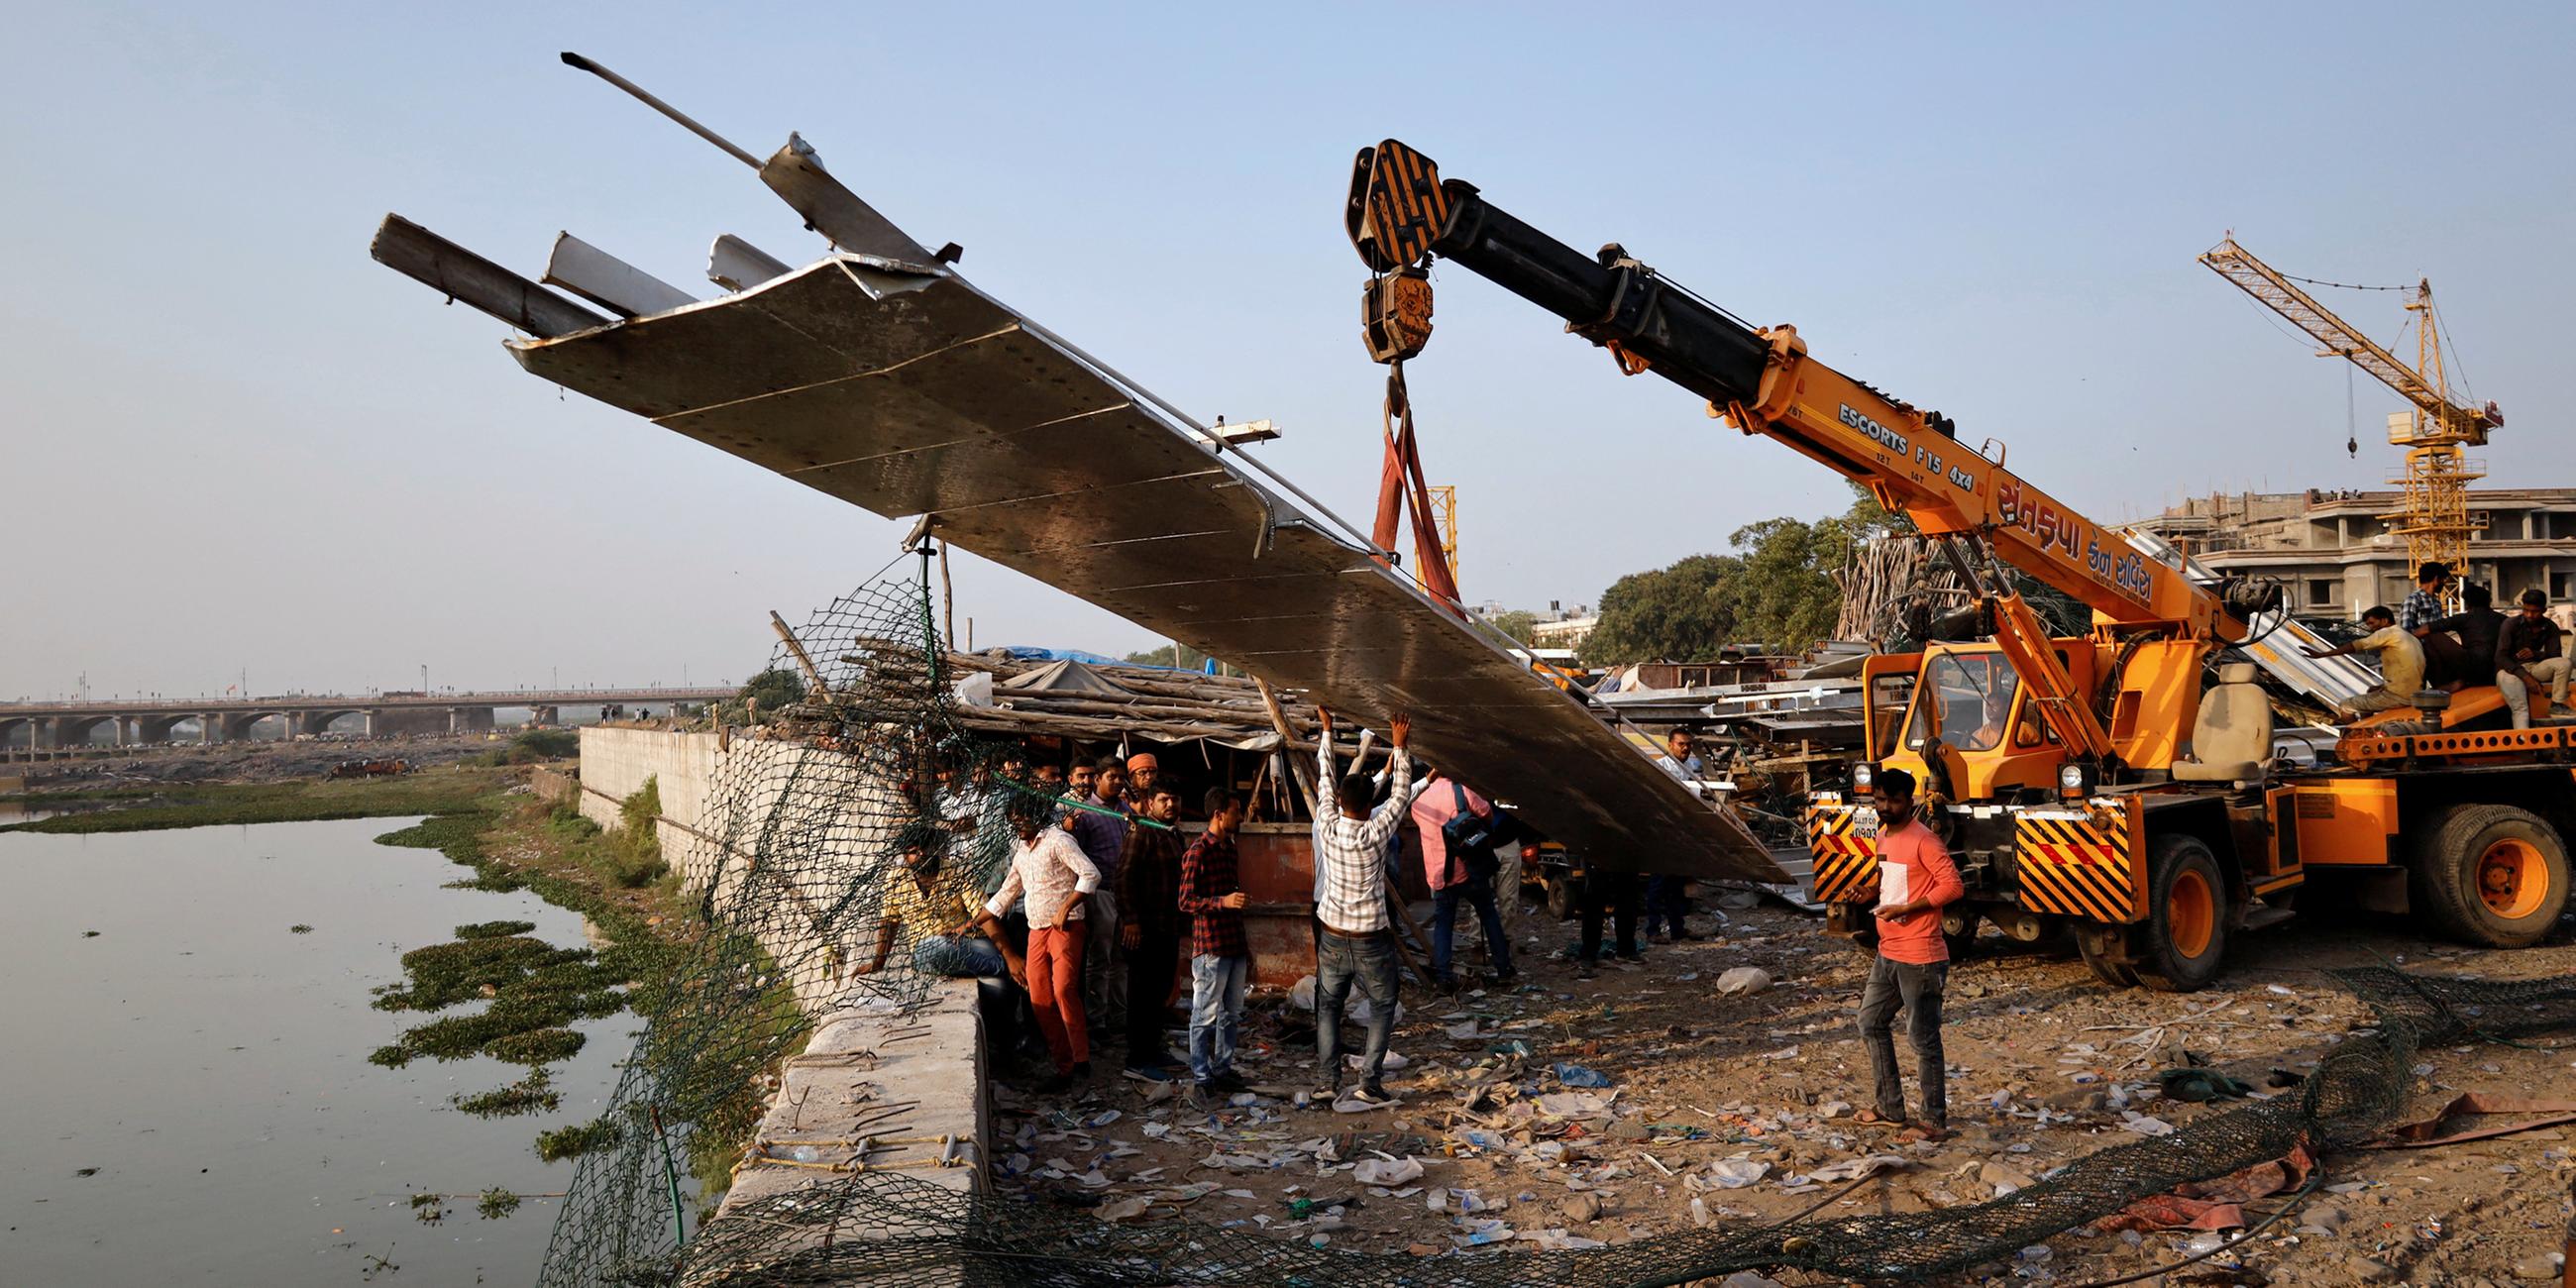 Menschen entfernen Trümmer, nachdem eine Hängebrücke in der Stadt Morbi in Indien eingestürzt ist.